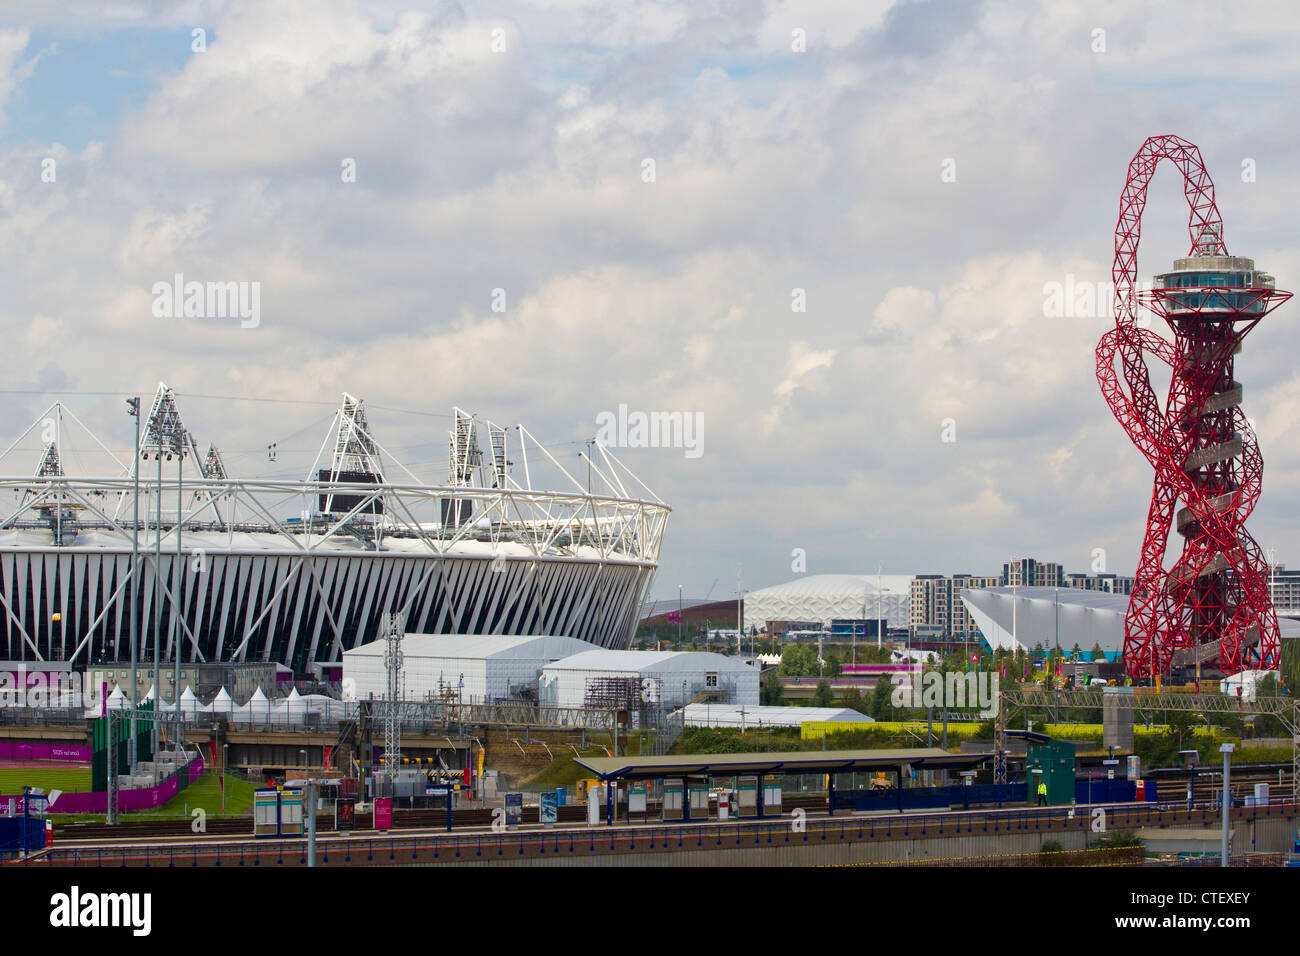 L'orbite d'Anish Kapoor s'élève au-dessus de la sculpture, Parc olympique de Stratford, East London, UK Banque D'Images